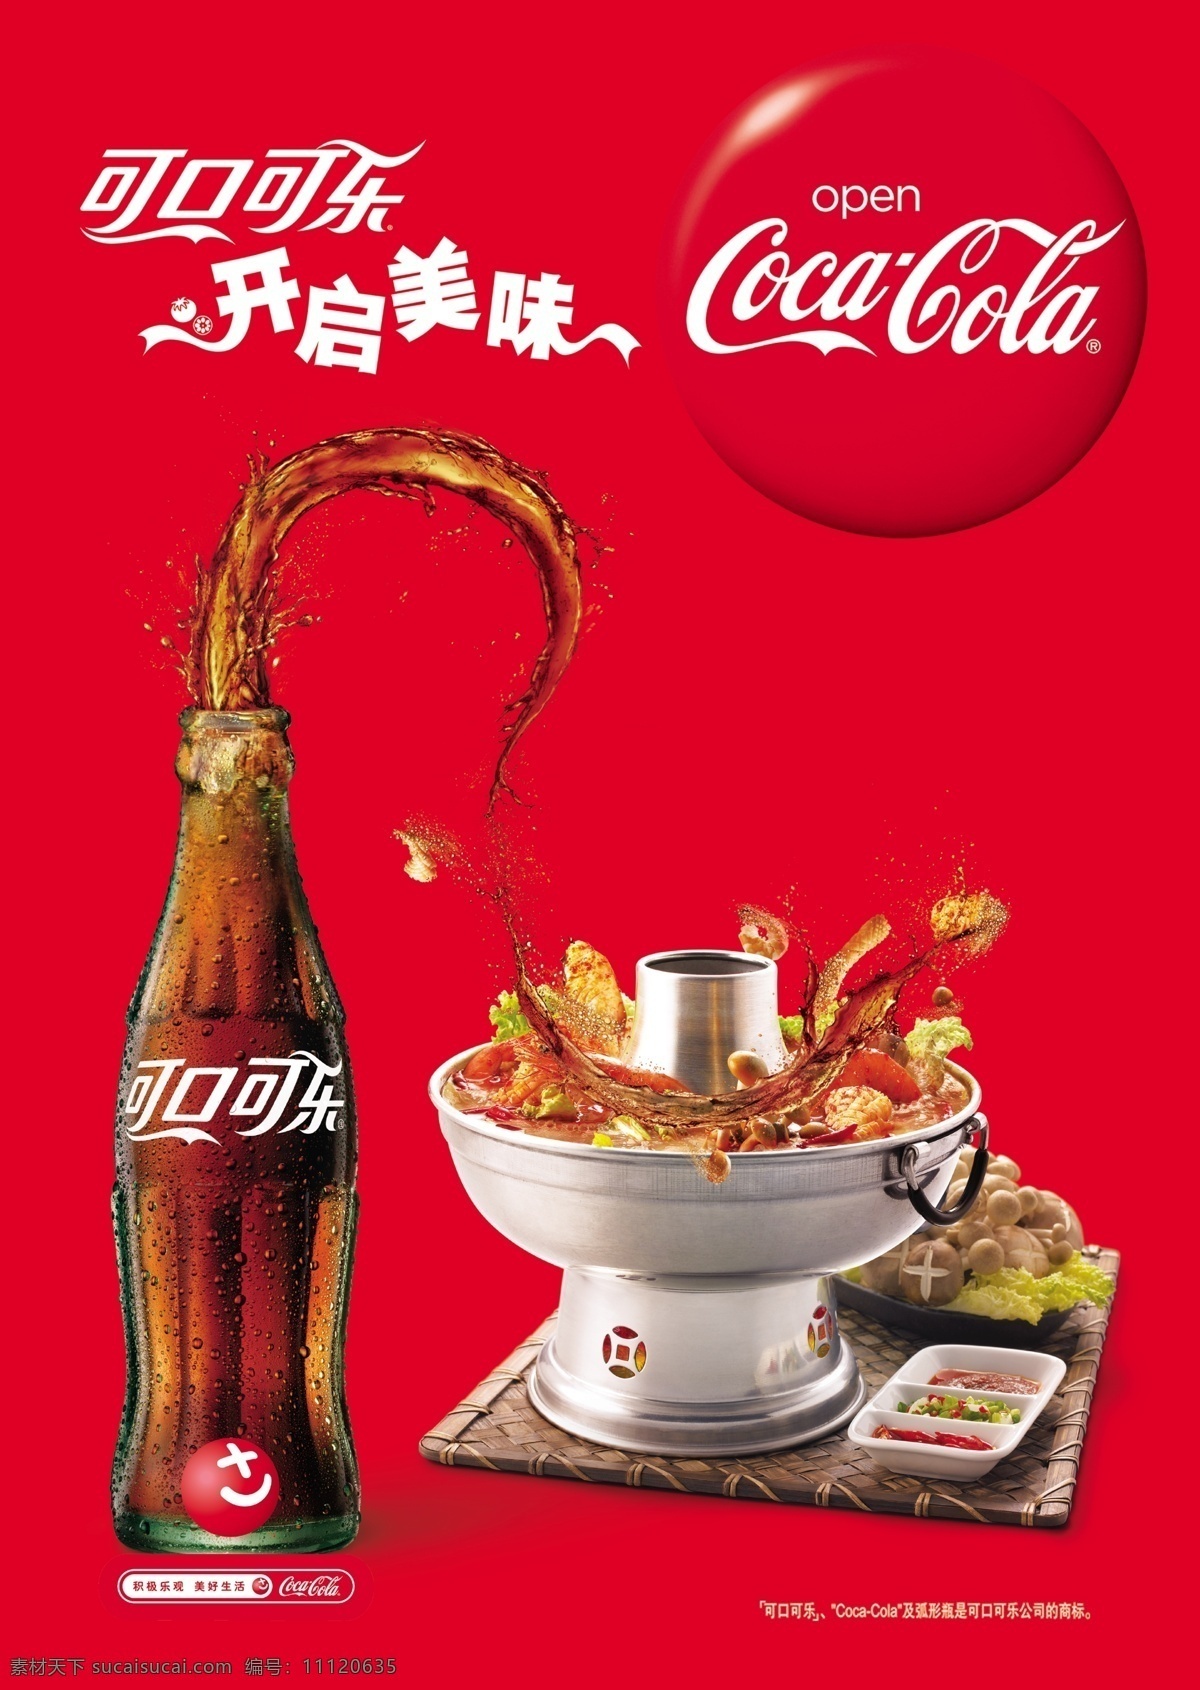 2010 年 可口可乐 新 元素 模版下载 玻璃瓶 火锅 餐饮 食杂 美食 海报 模板 源文件 生活百科 餐饮美食 红色